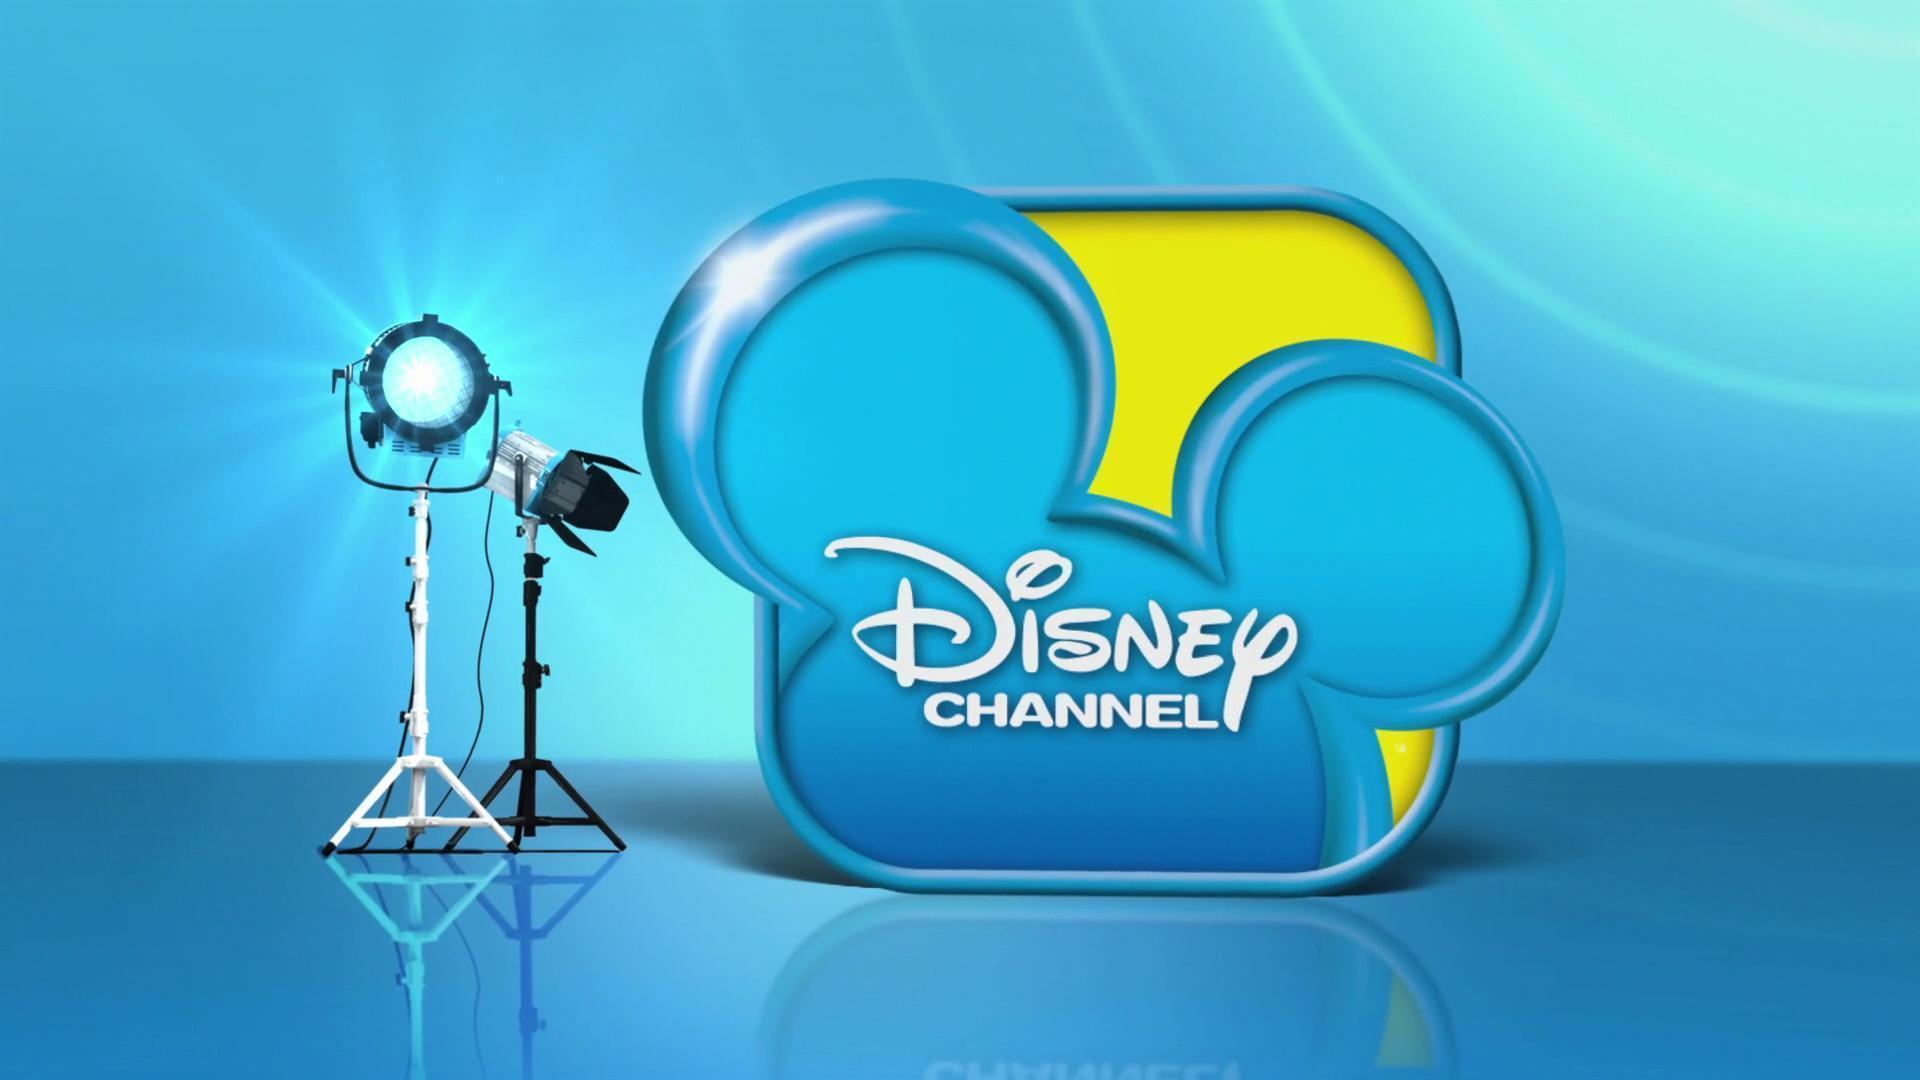 Disney Channel HD Logo - Disney Channel Wallpaper